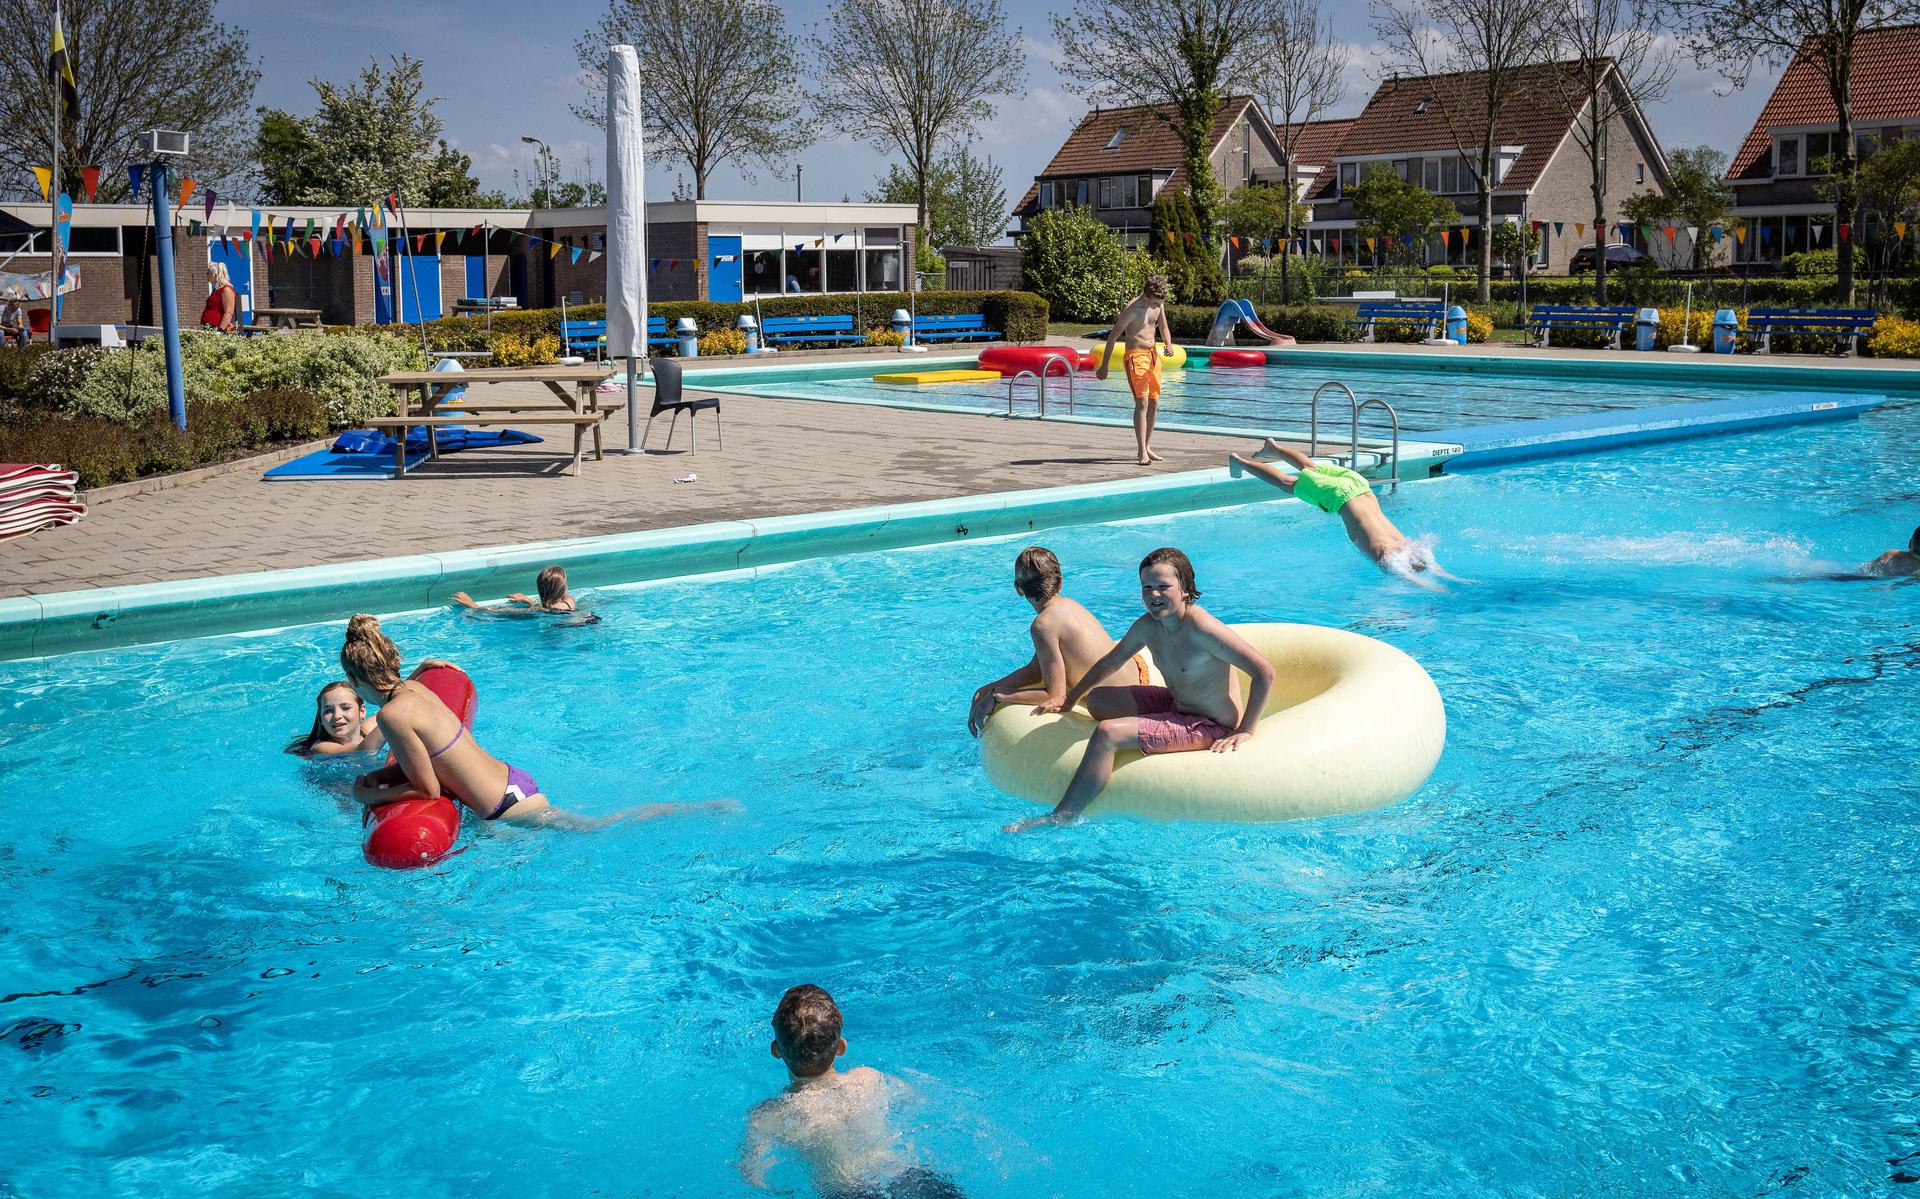 Het zwembad in Blokzijl.